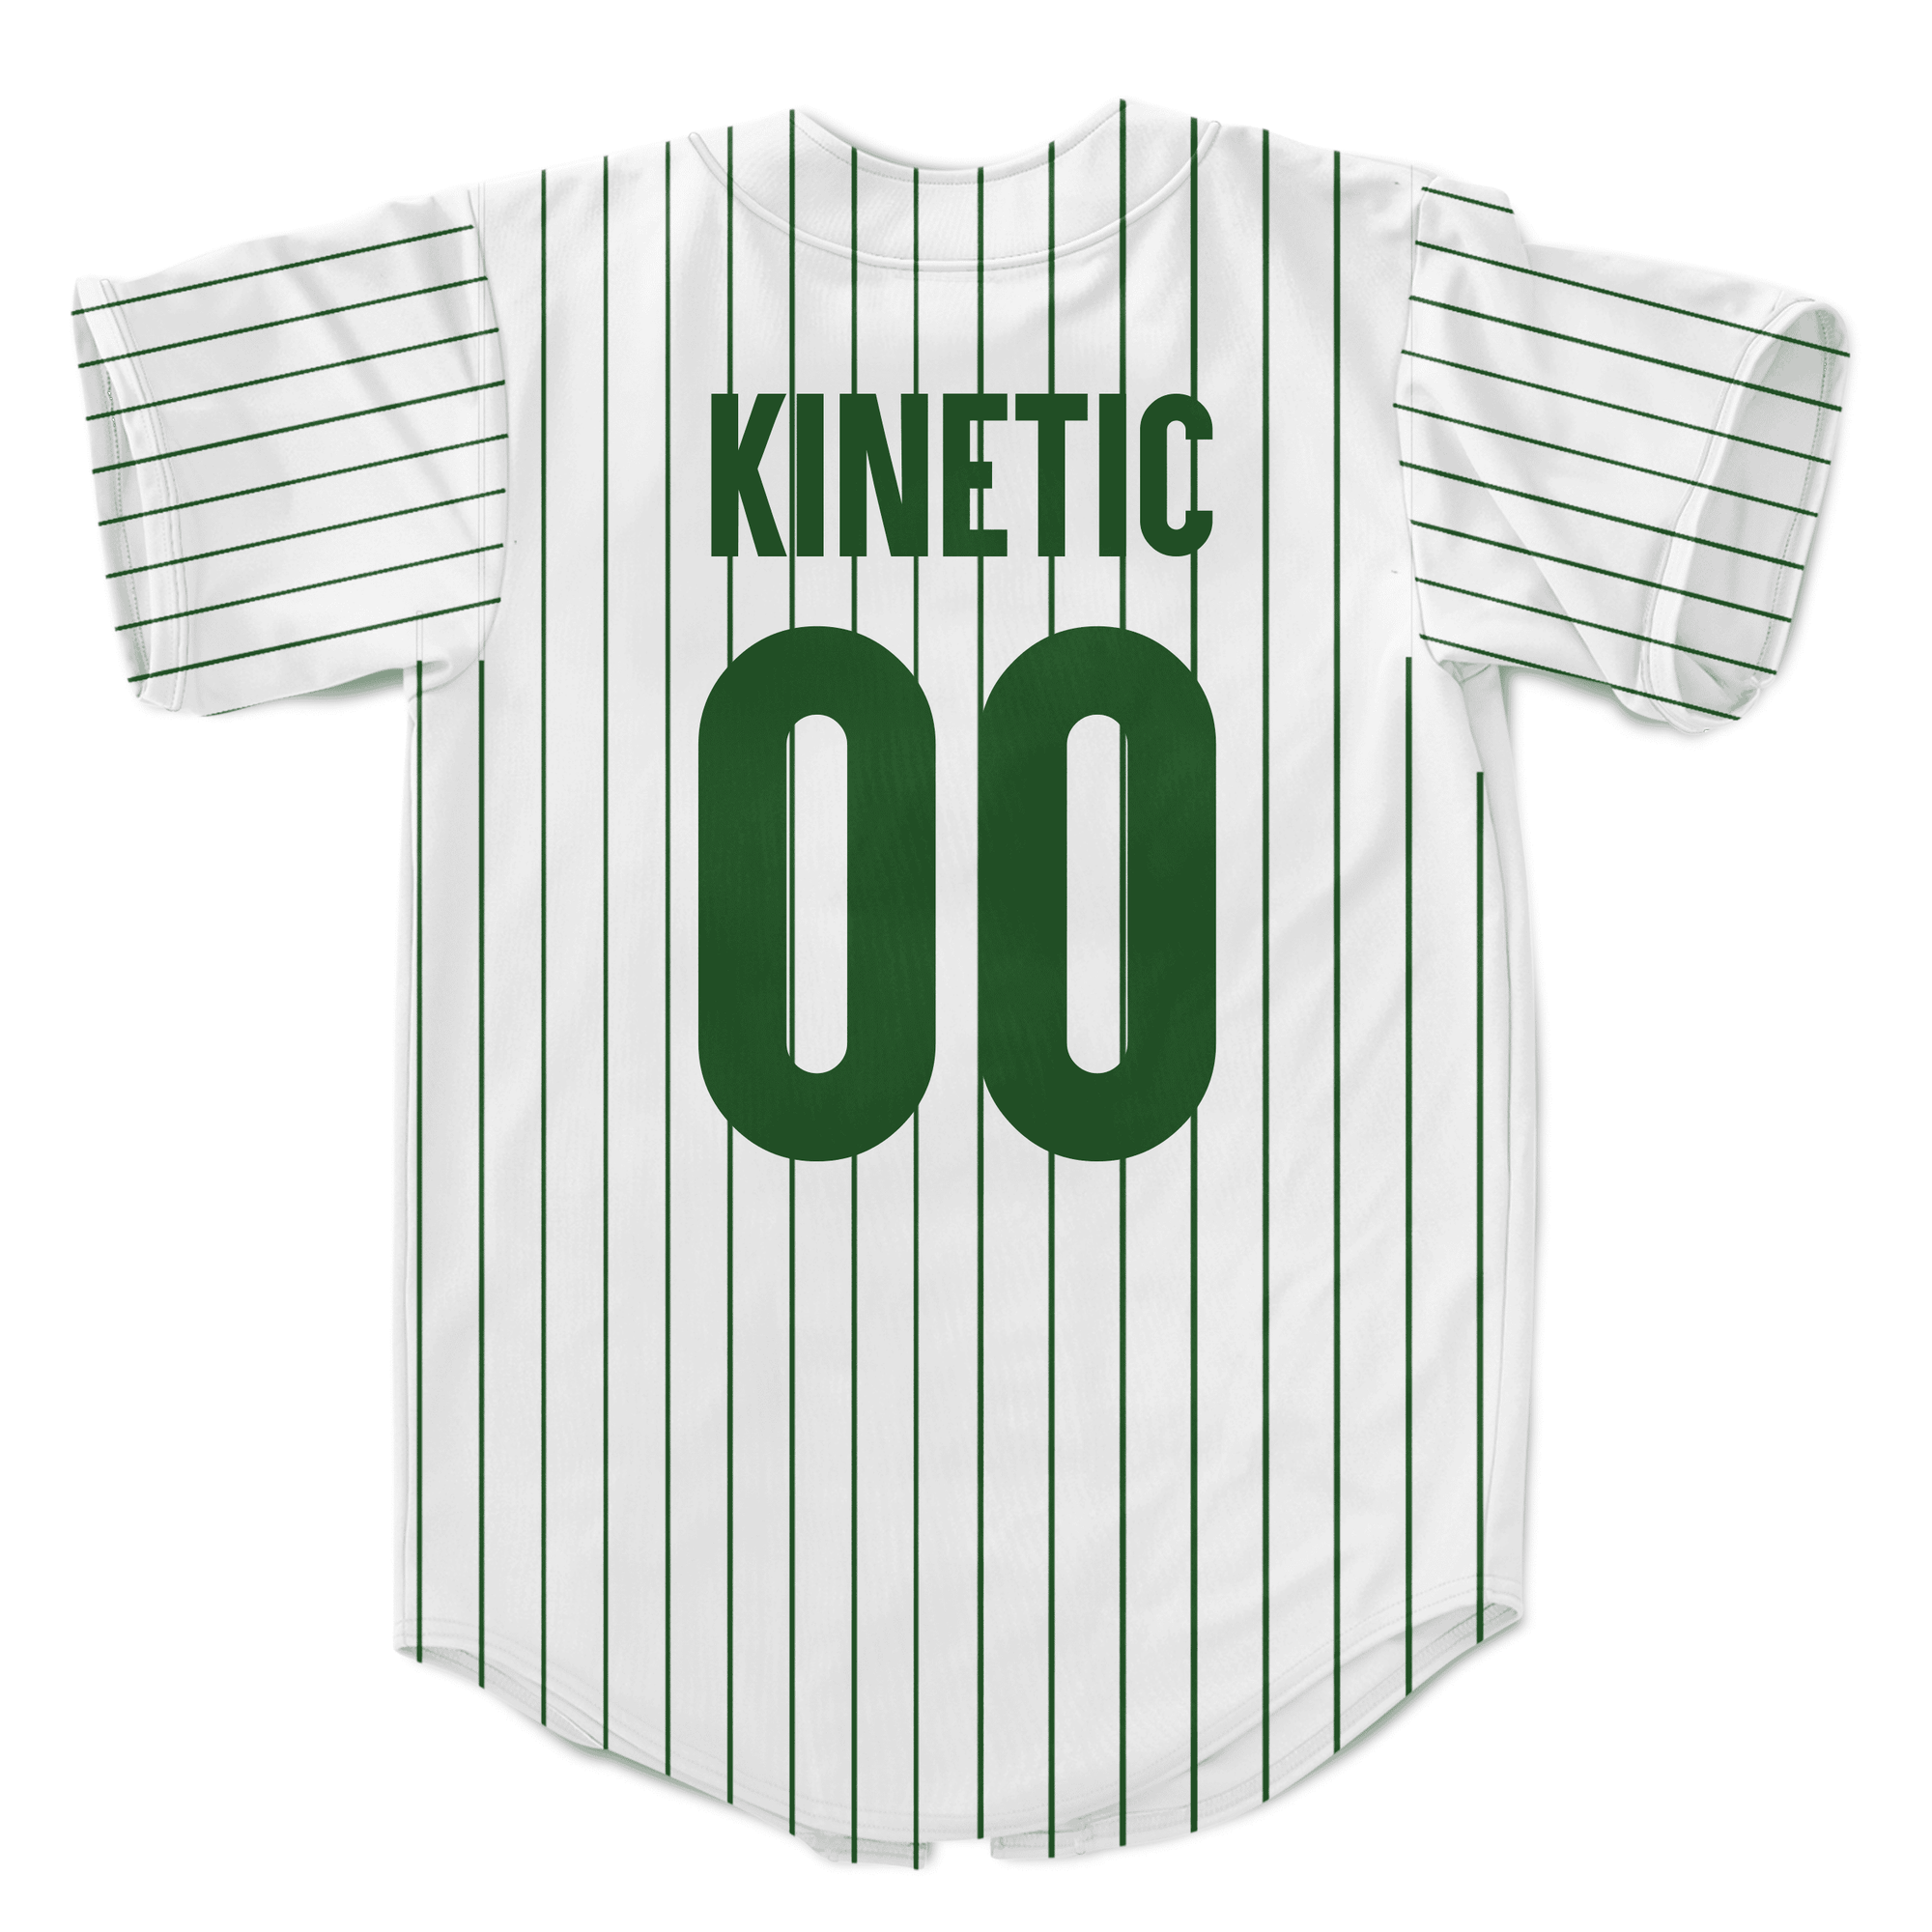 Kappa Sigma - Green Pinstripe Baseball Jersey